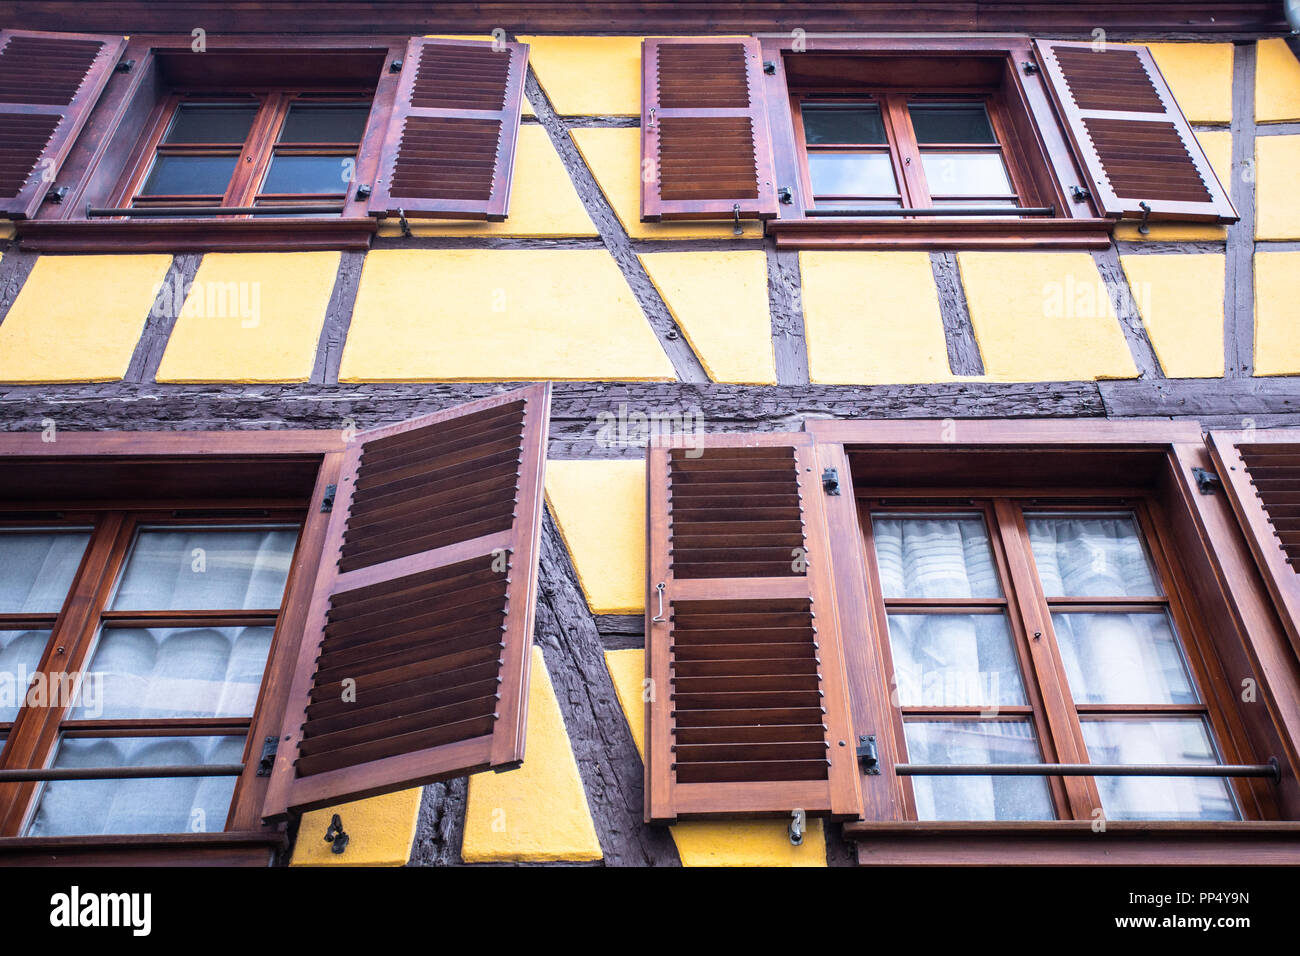 Dettagli su incantevoli a struttura mista in legno e muratura edificio con ante su windows fotografato a Strasburgo Francia Foto Stock